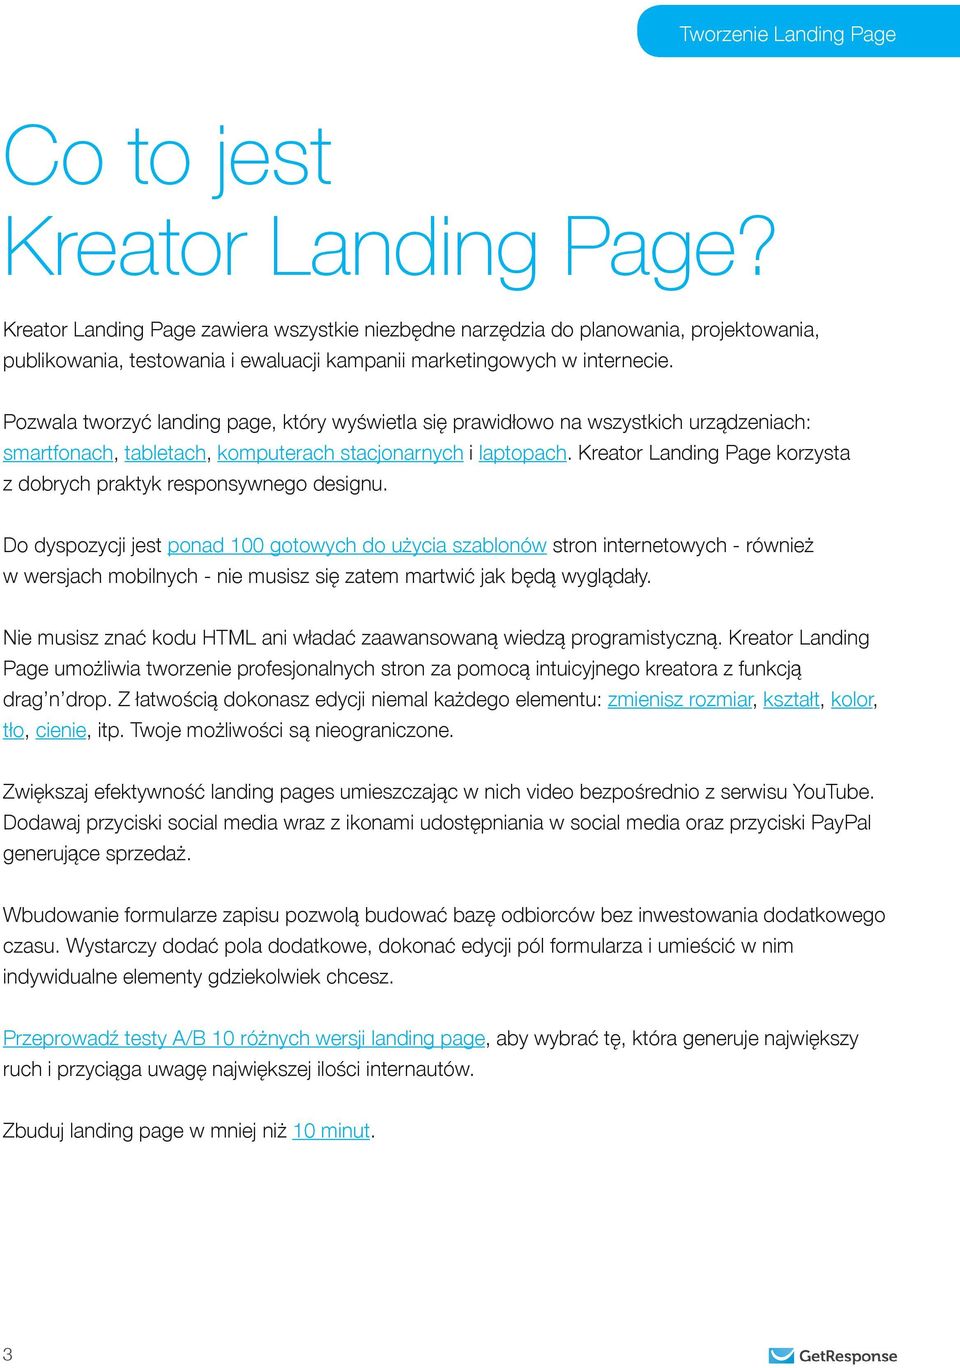 Kreator Landing Page korzysta z dobrych praktyk responsywnego designu.